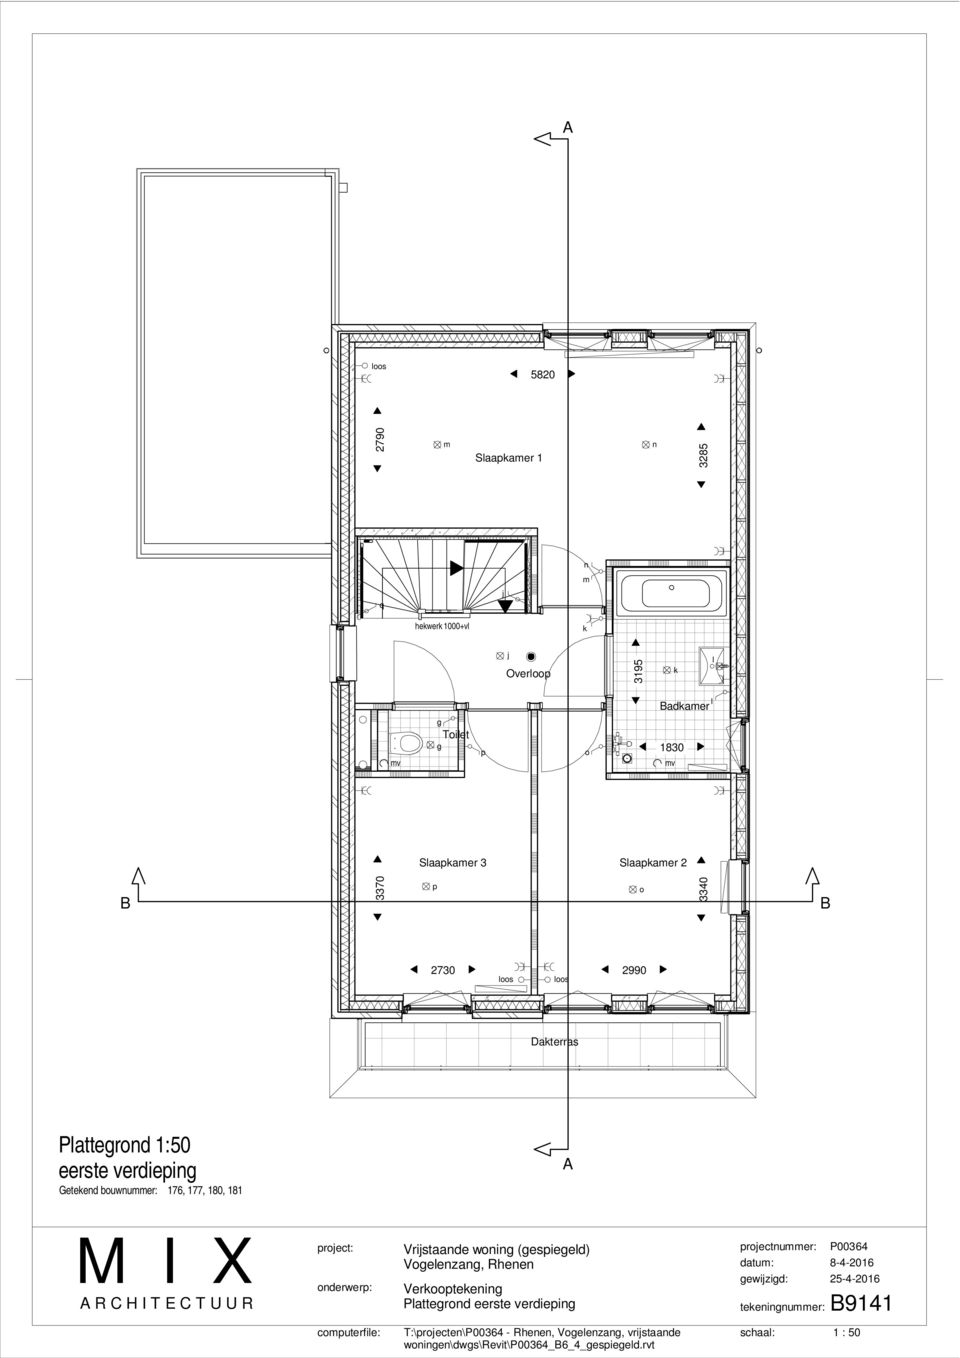 Dakterras Plattegrond 1:50 eerste verdieping A Vrijstaande woning (gespiegeld)